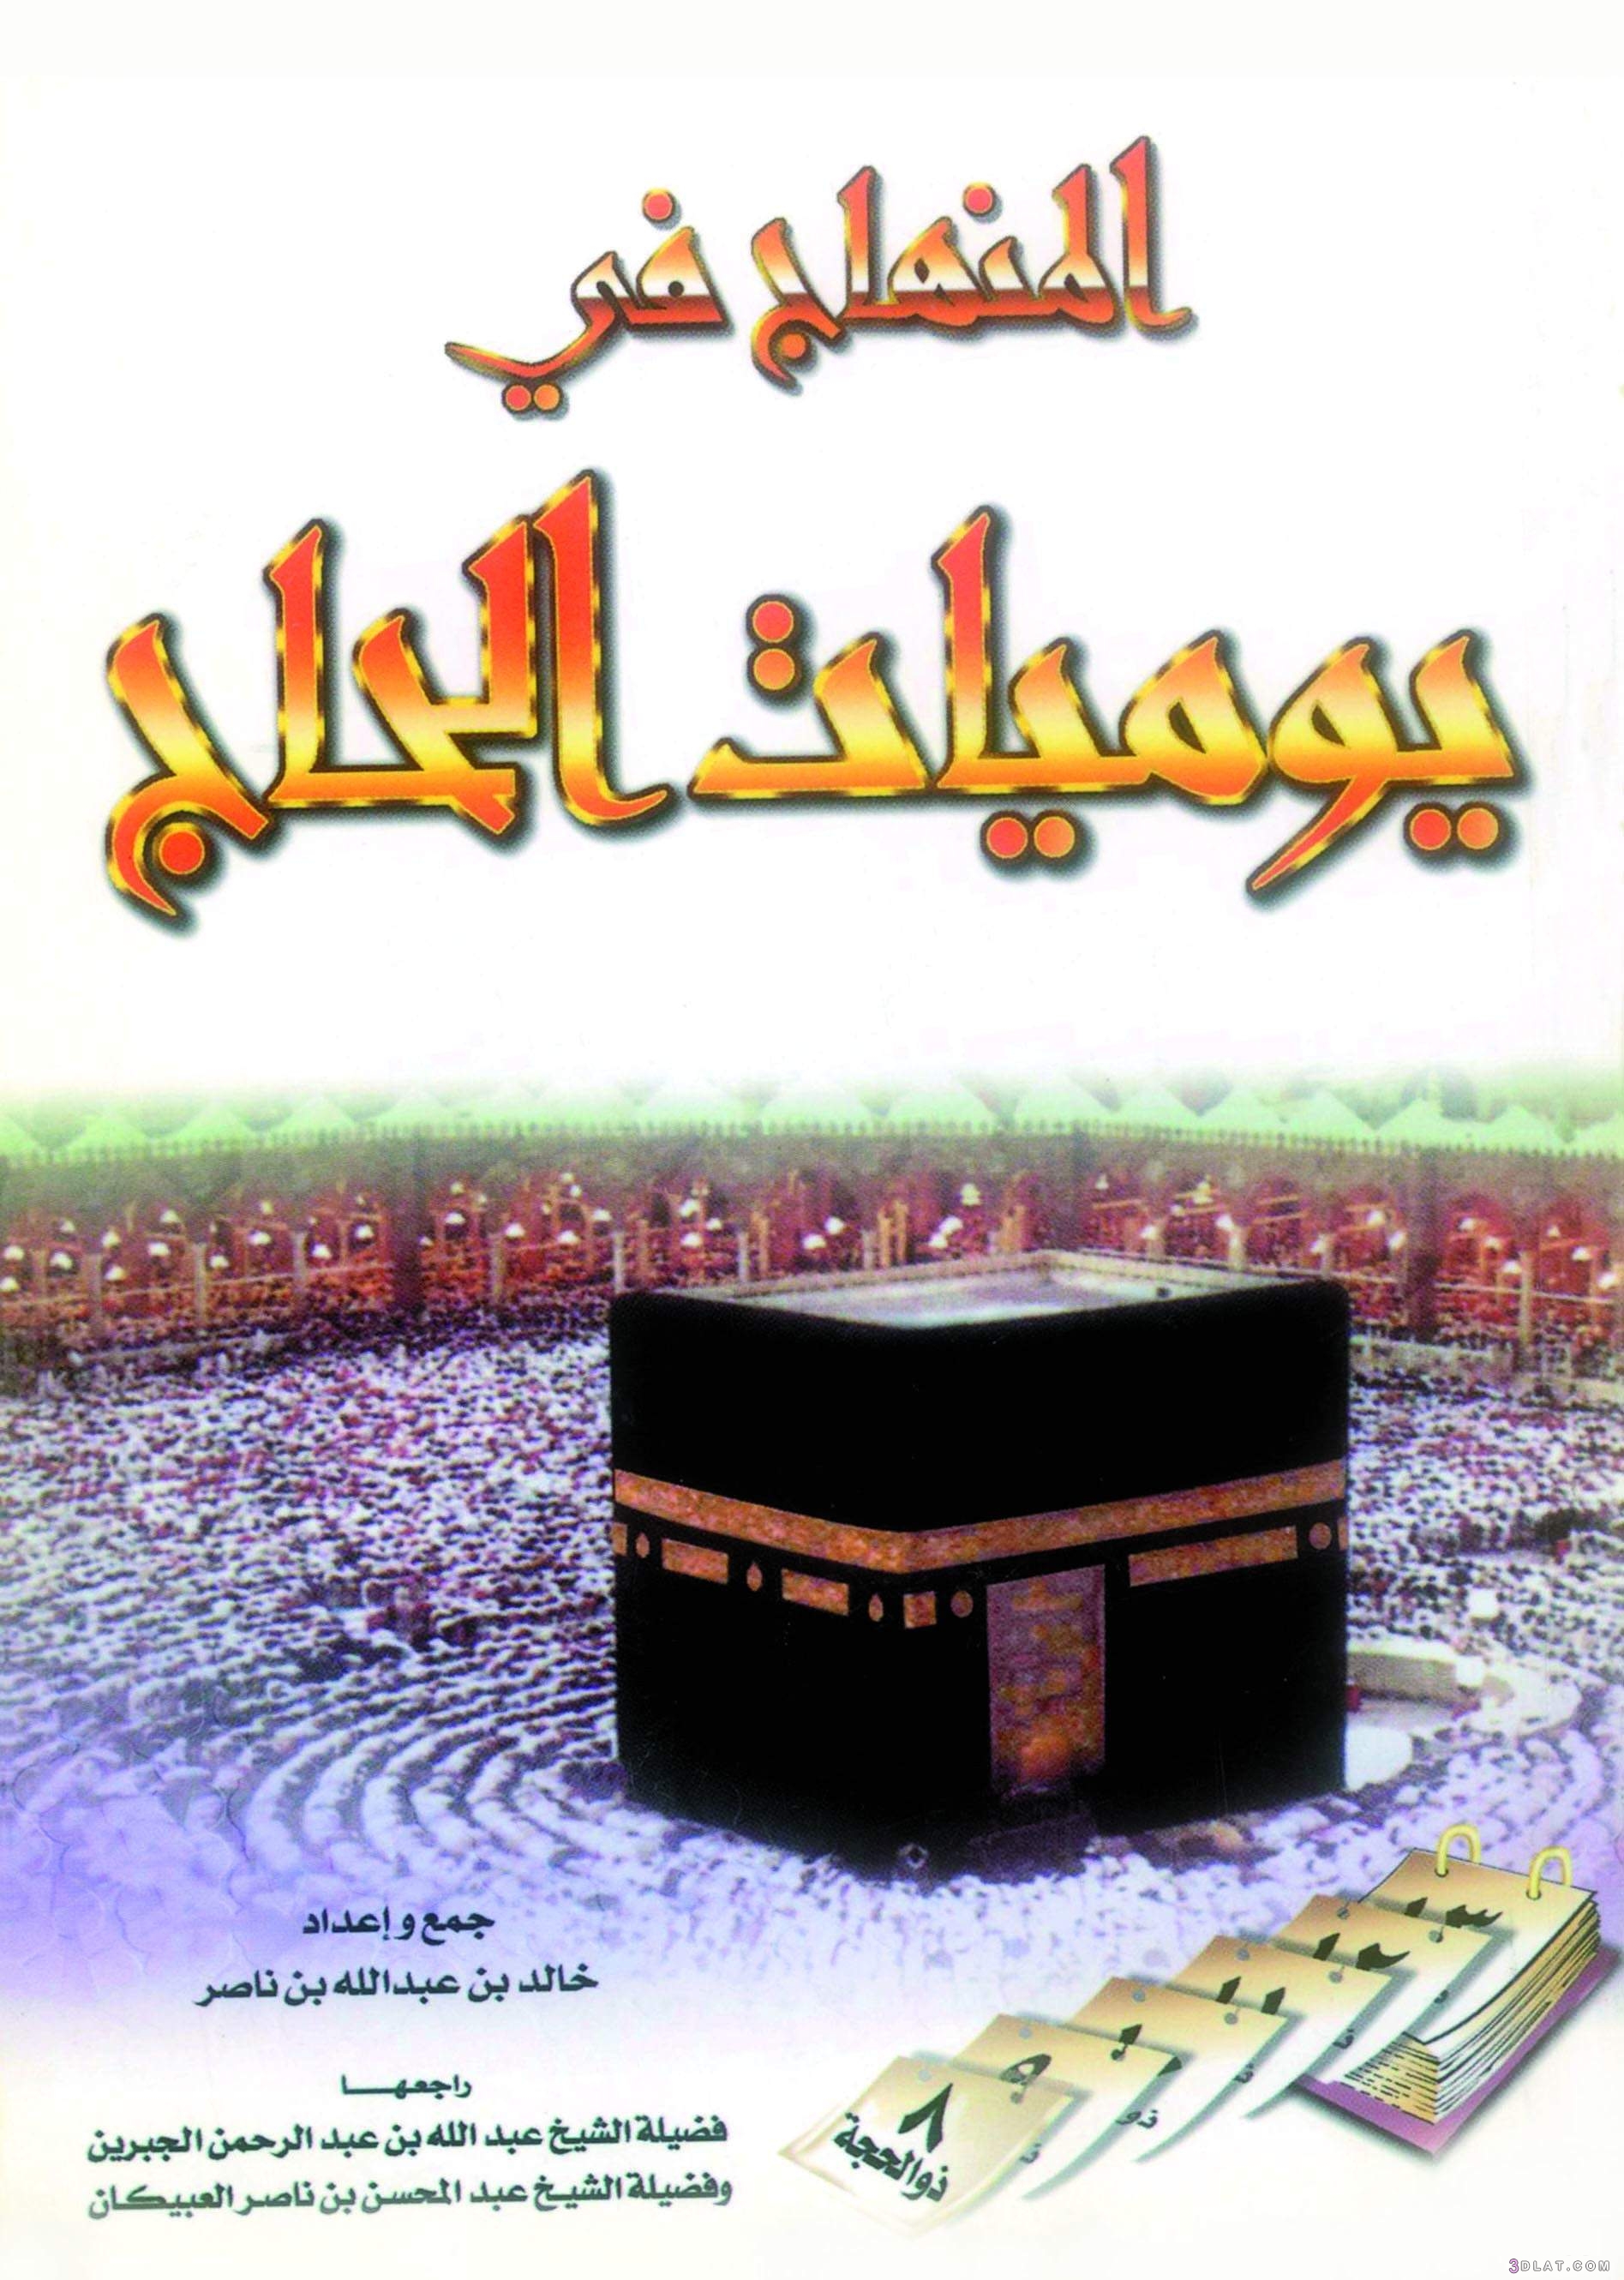 كتاب المنهاج في يوميات الحاج (1)  ما يفعله الحاج (2) للشيخ خالد بن عبد الل